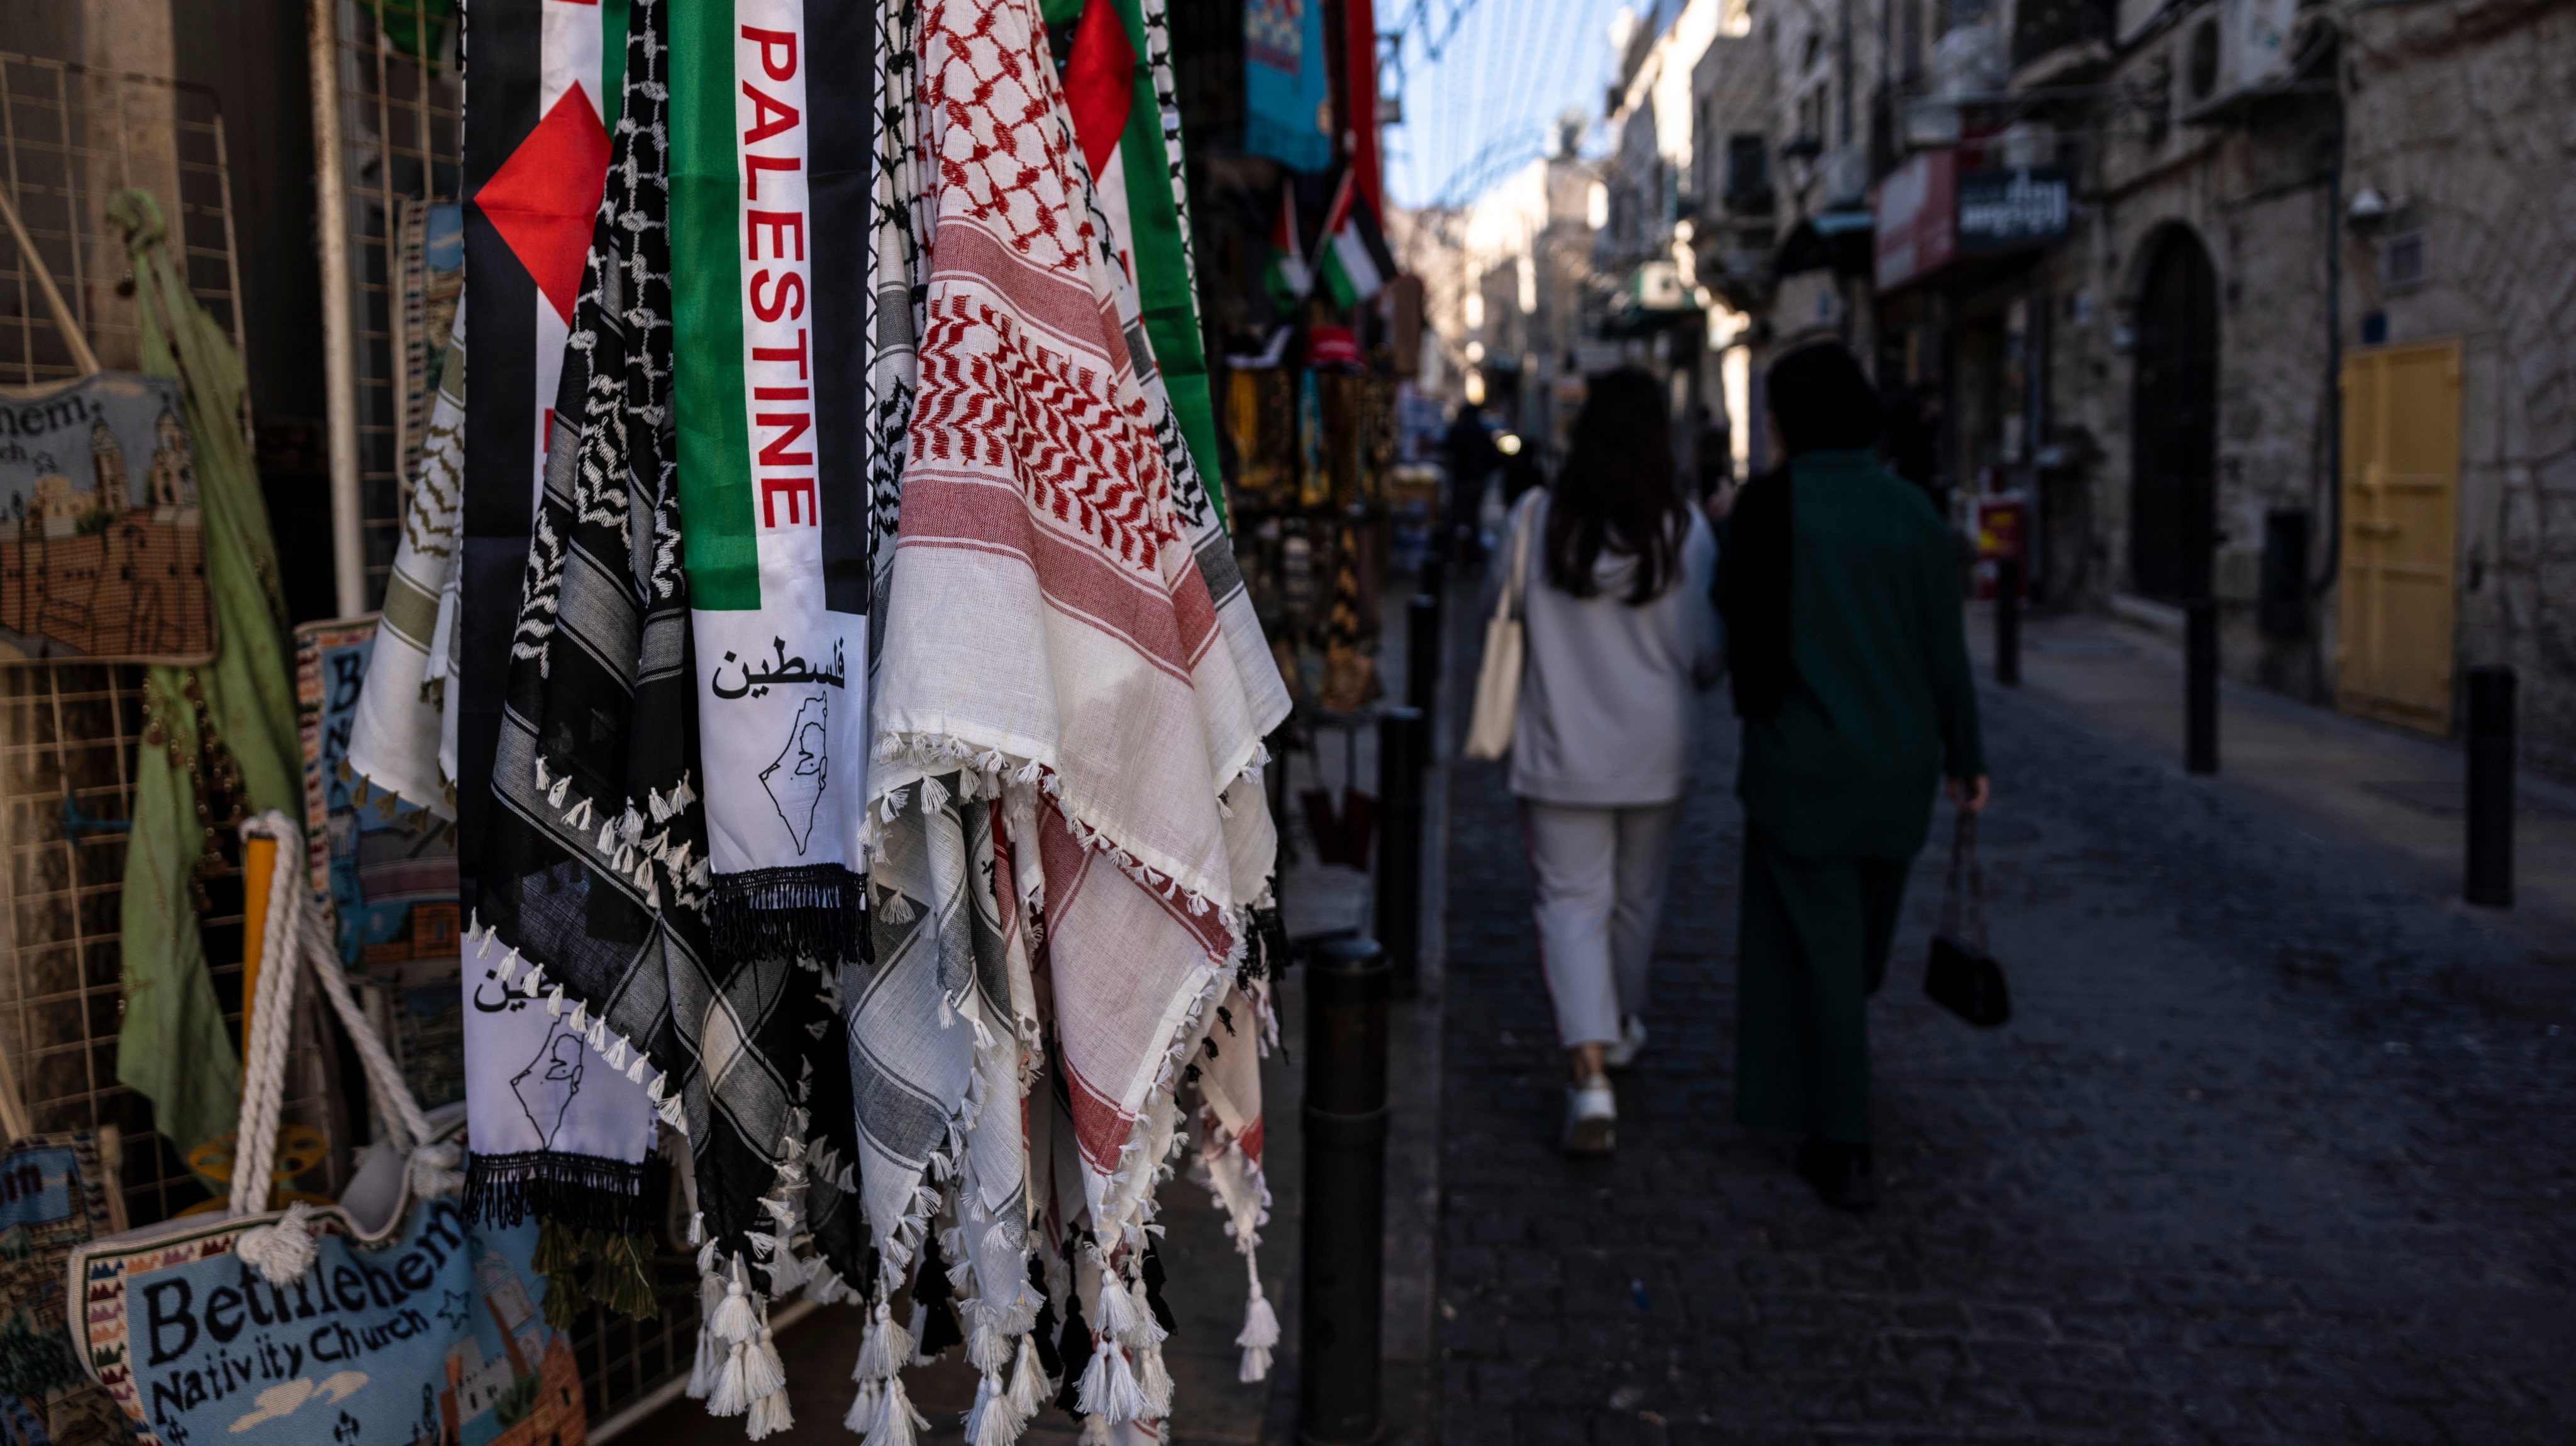 737 photos et images de Keffieh Palestine - Getty Images